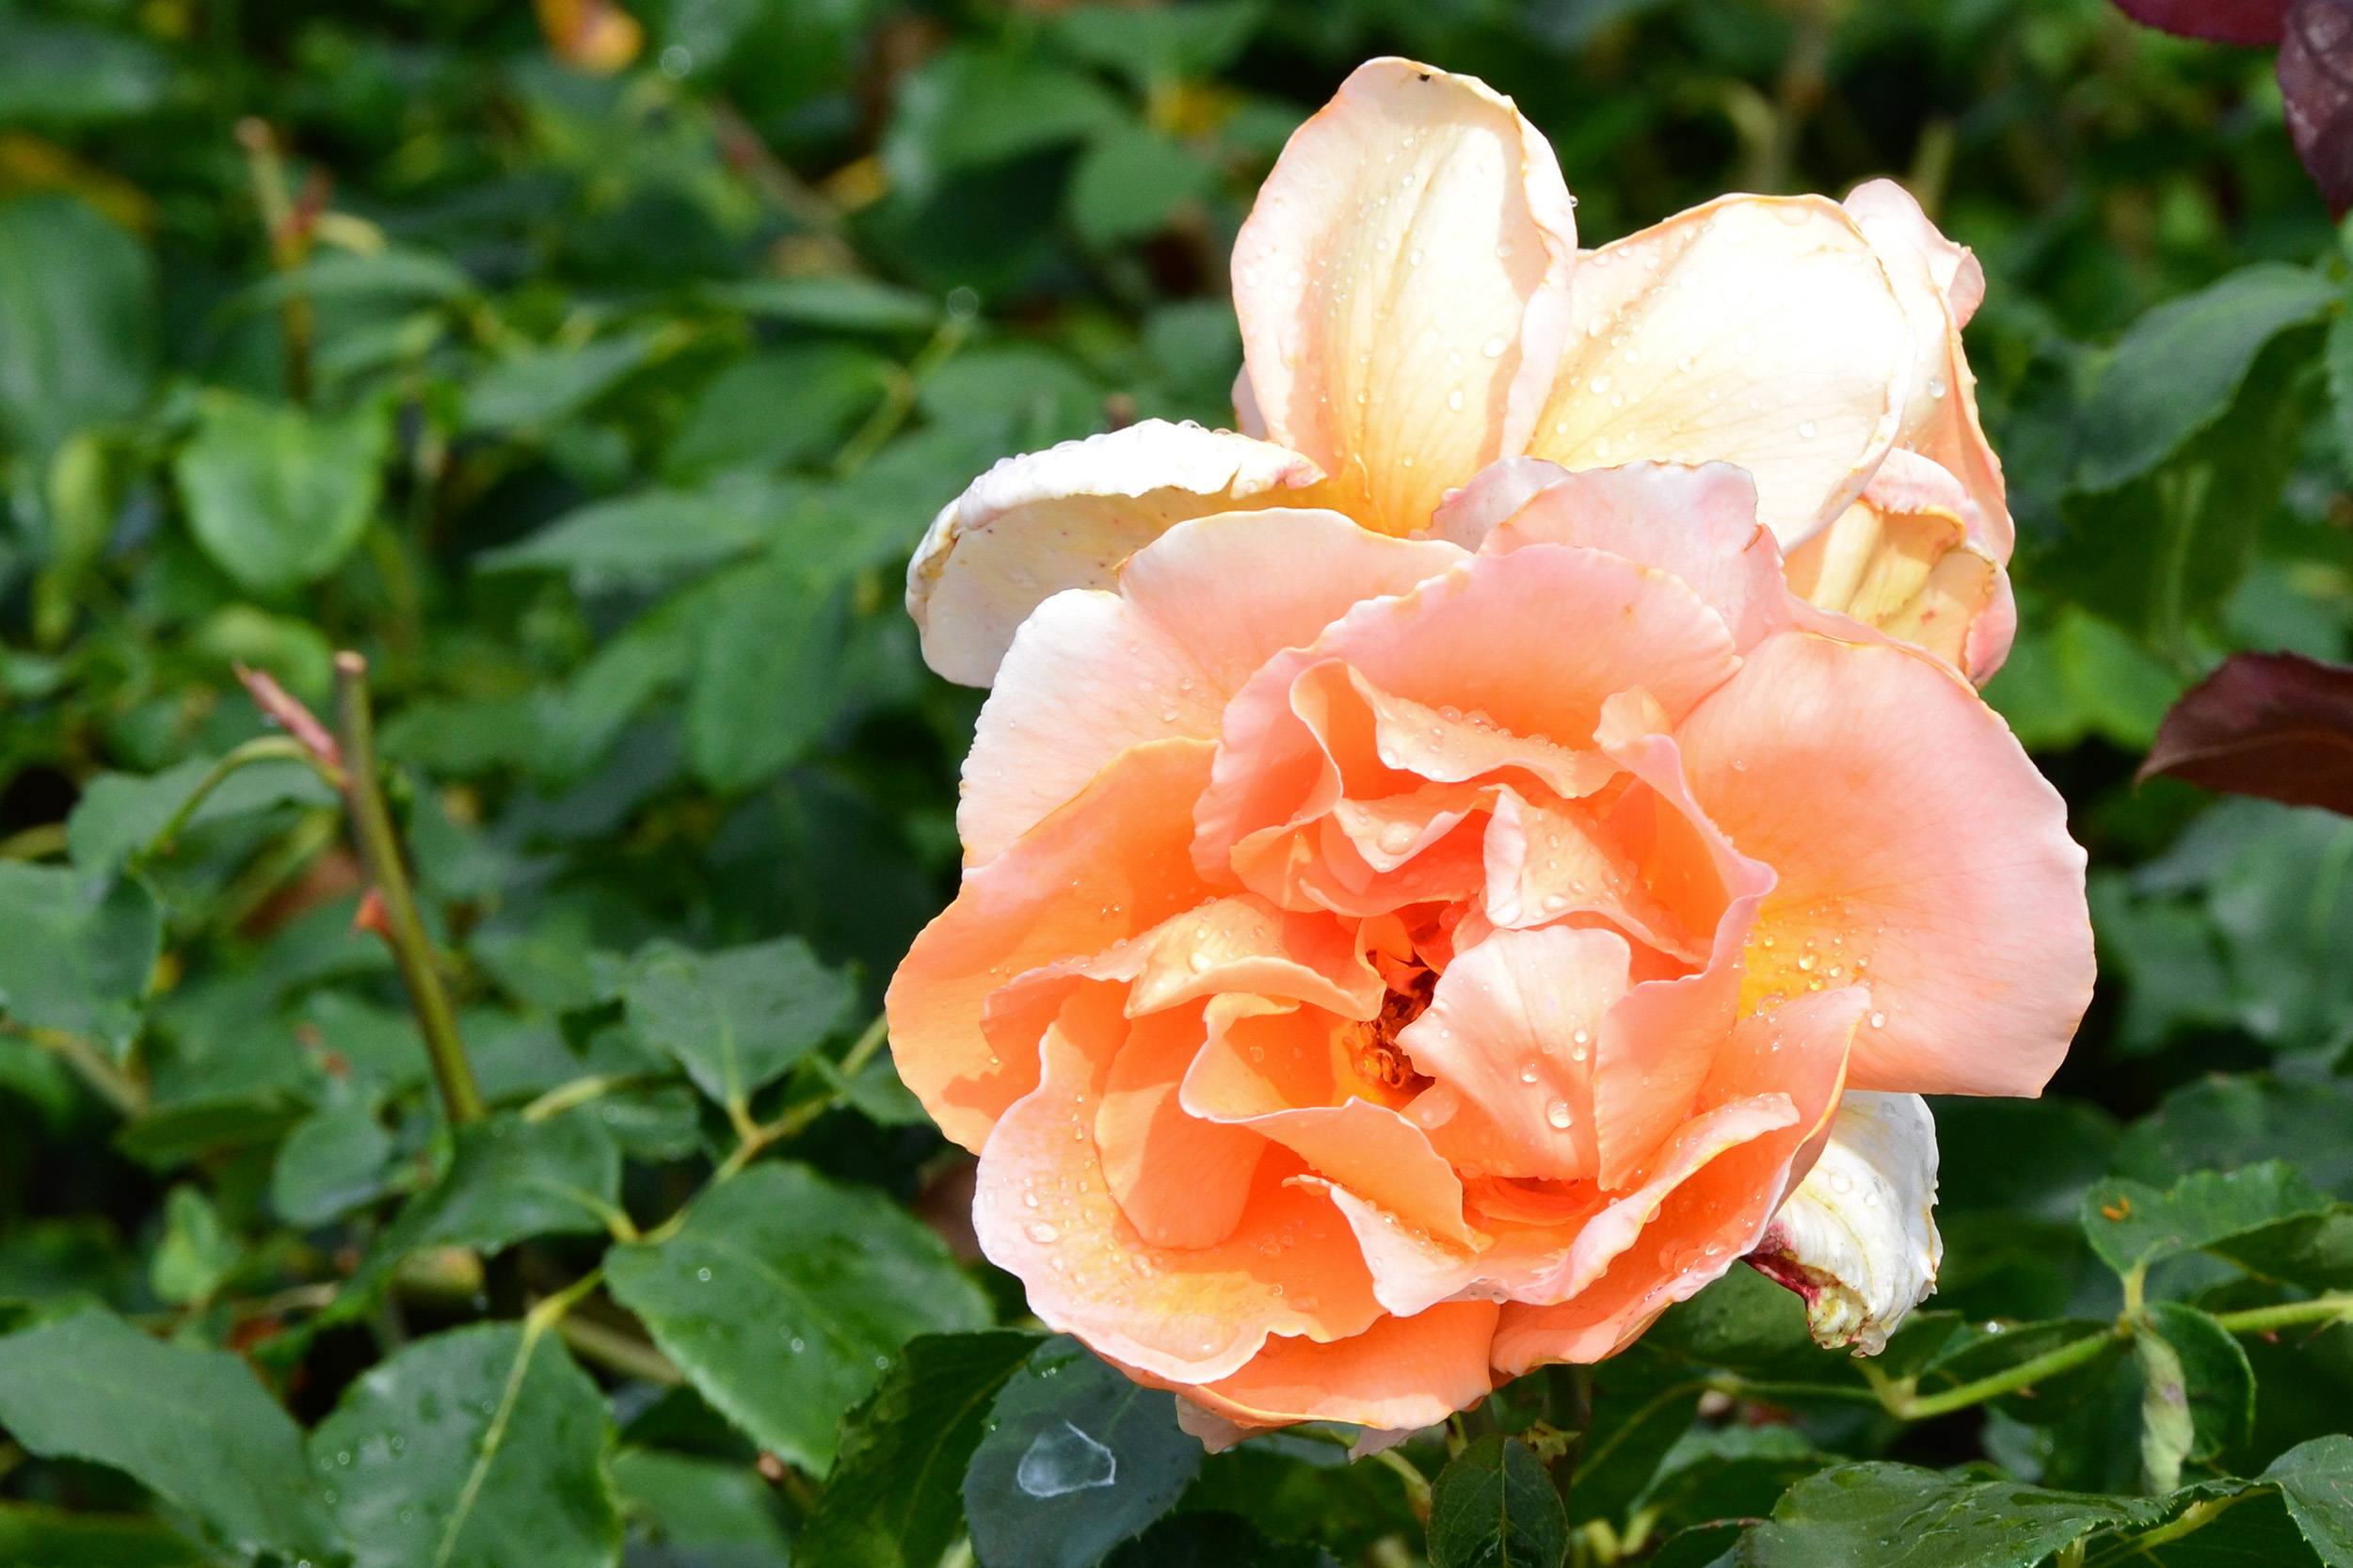 Hybrid tea rose 'just joey' photo